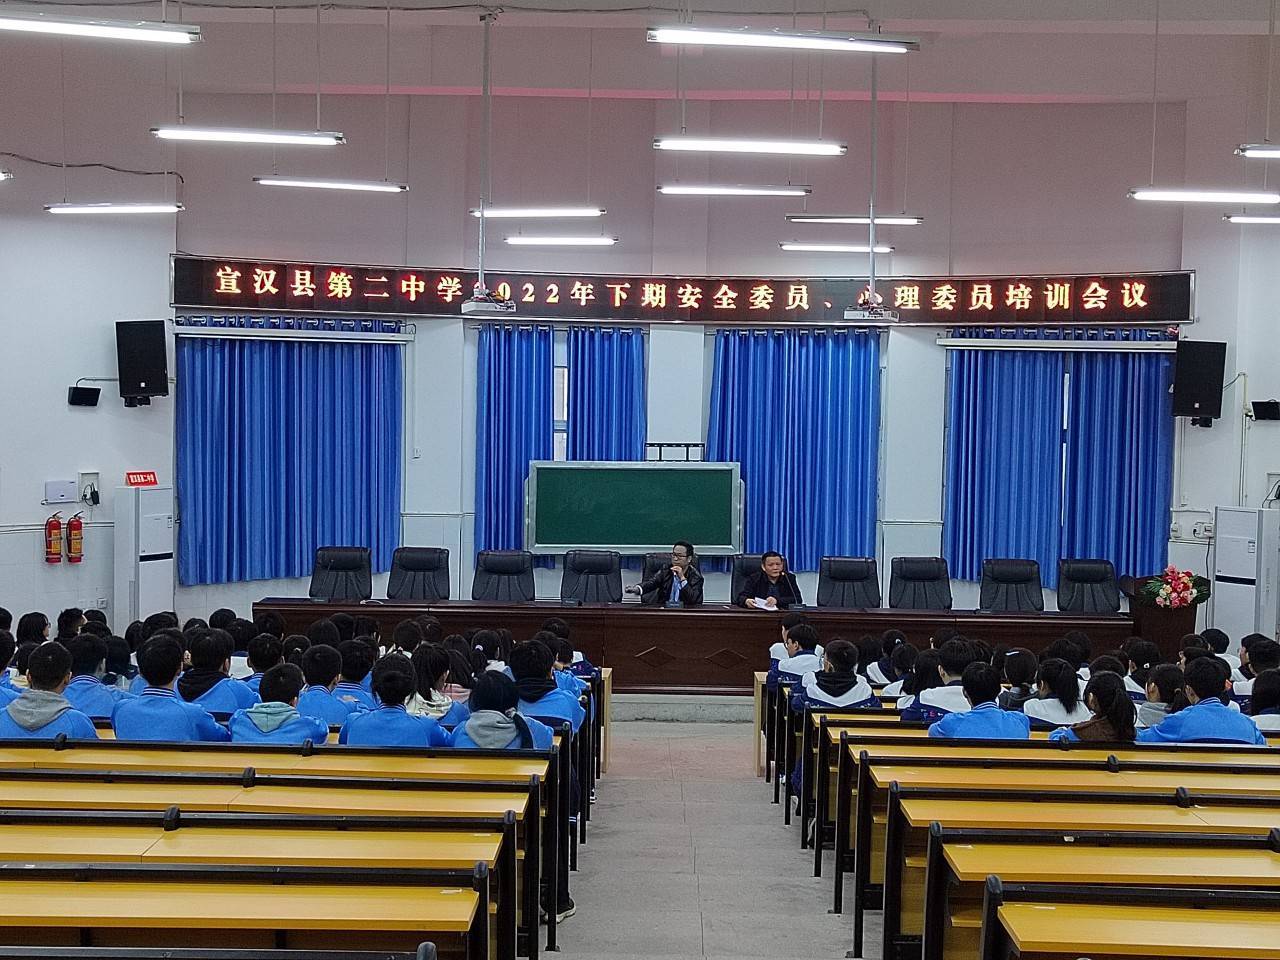 宣汉县第二中学校花图片